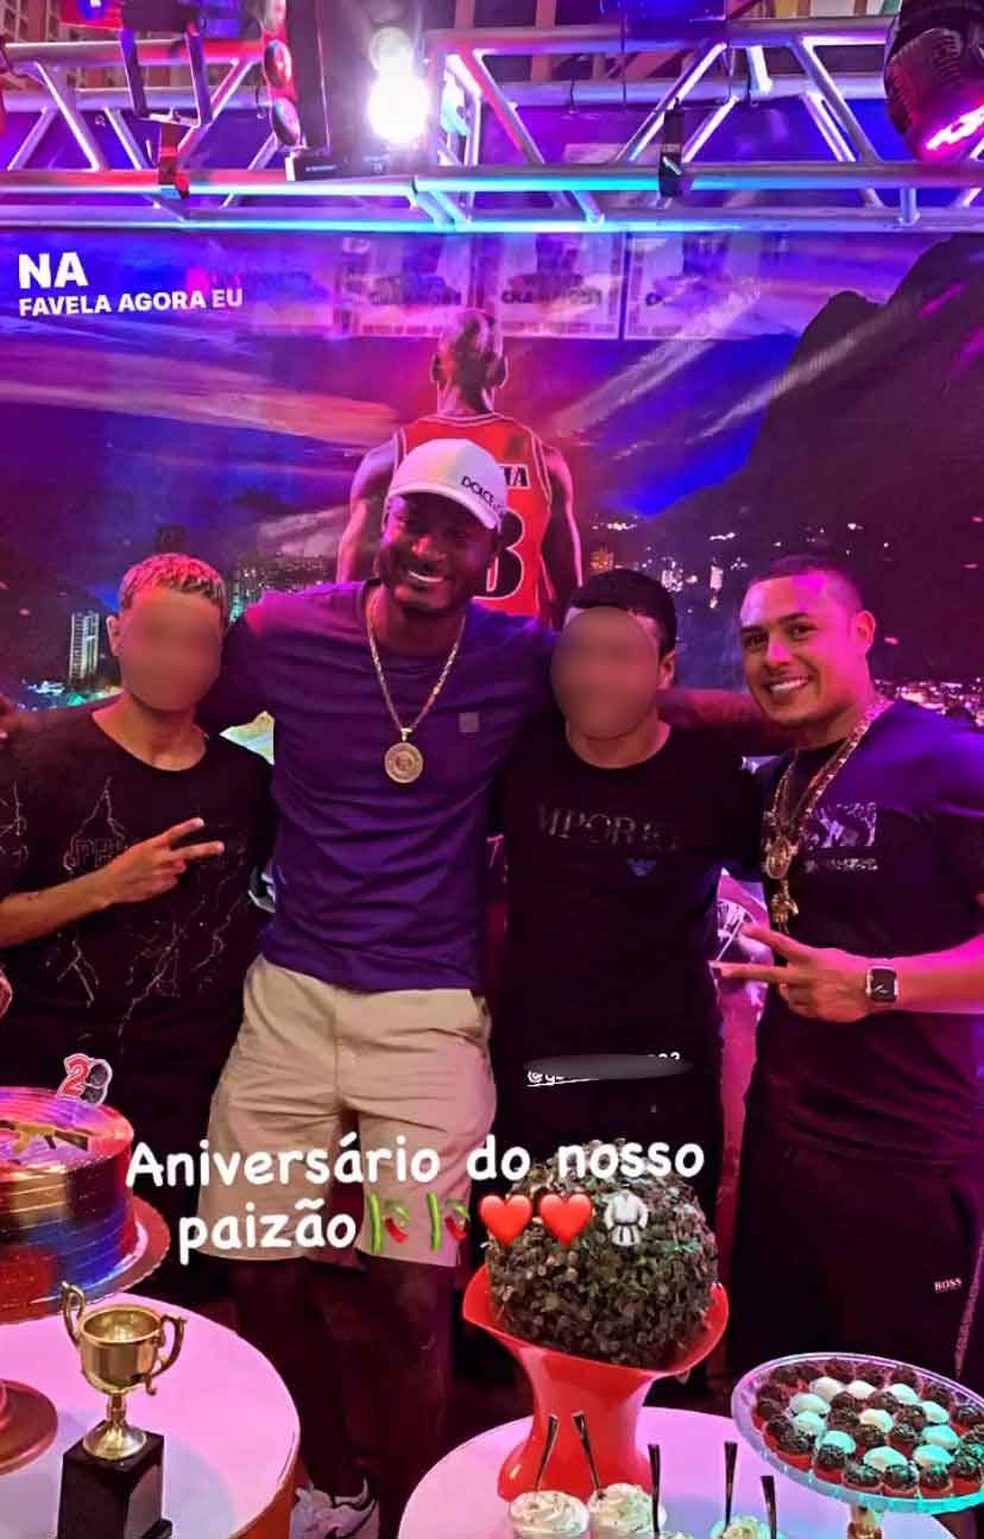 Imagens de festa de aniversário de traficante da Rocinha circulam